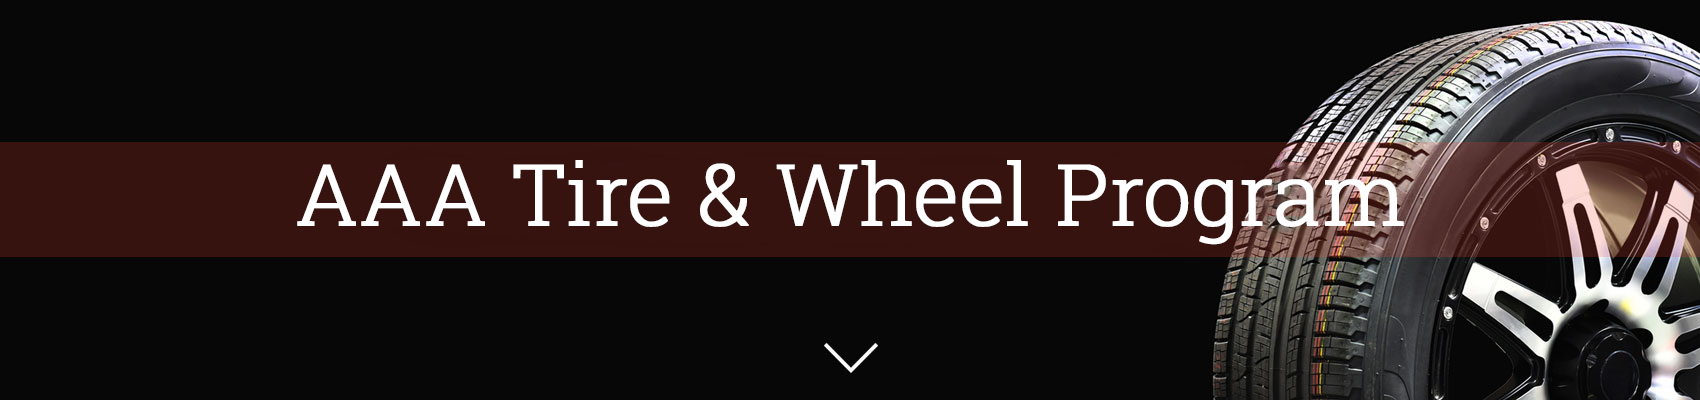 AAA Tire & Wheel Program